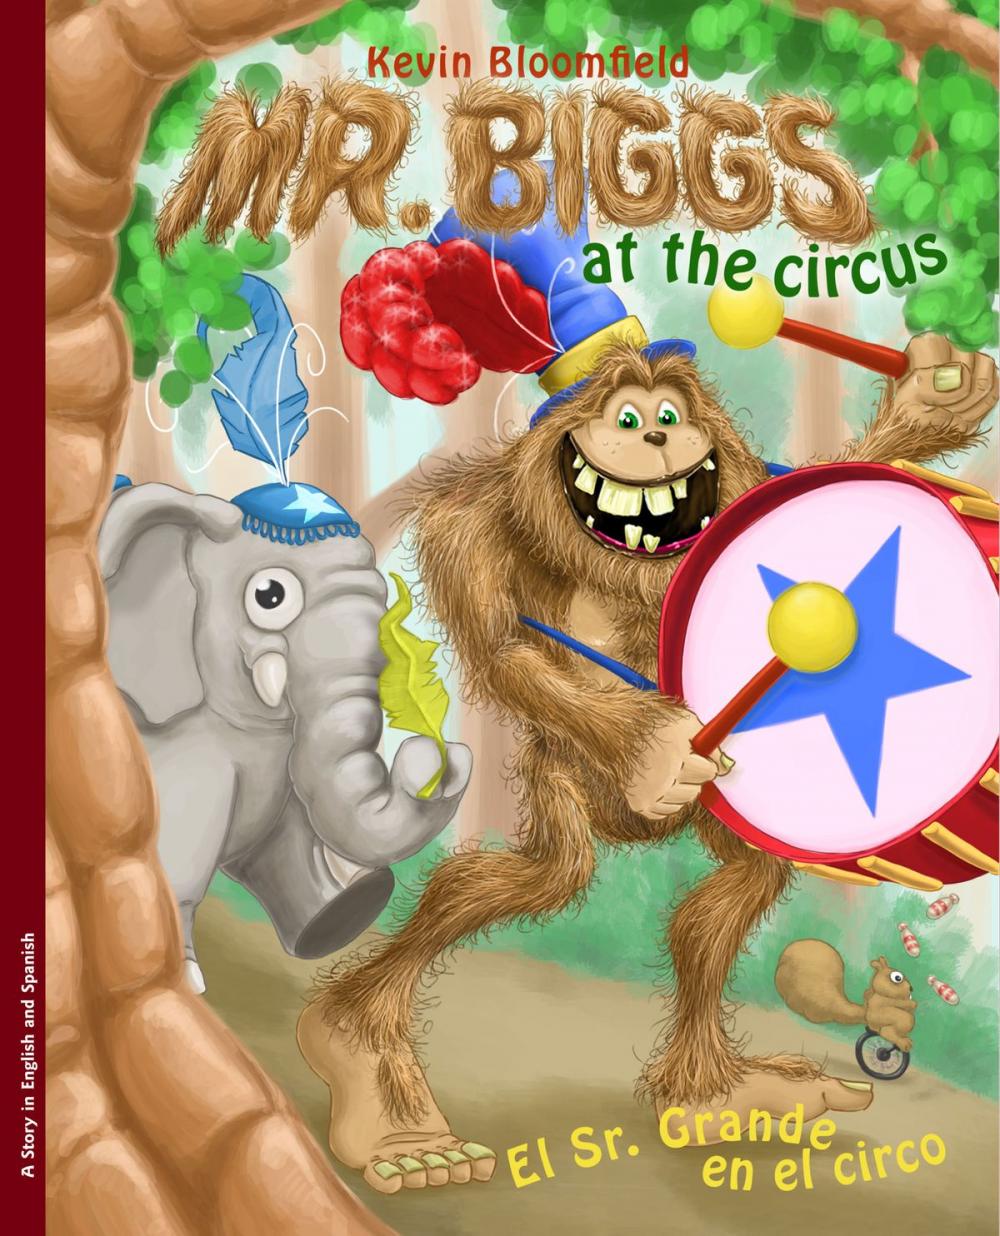 Big bigCover of Mr. Biggs at the Circus / El Sr. Grande en el circo